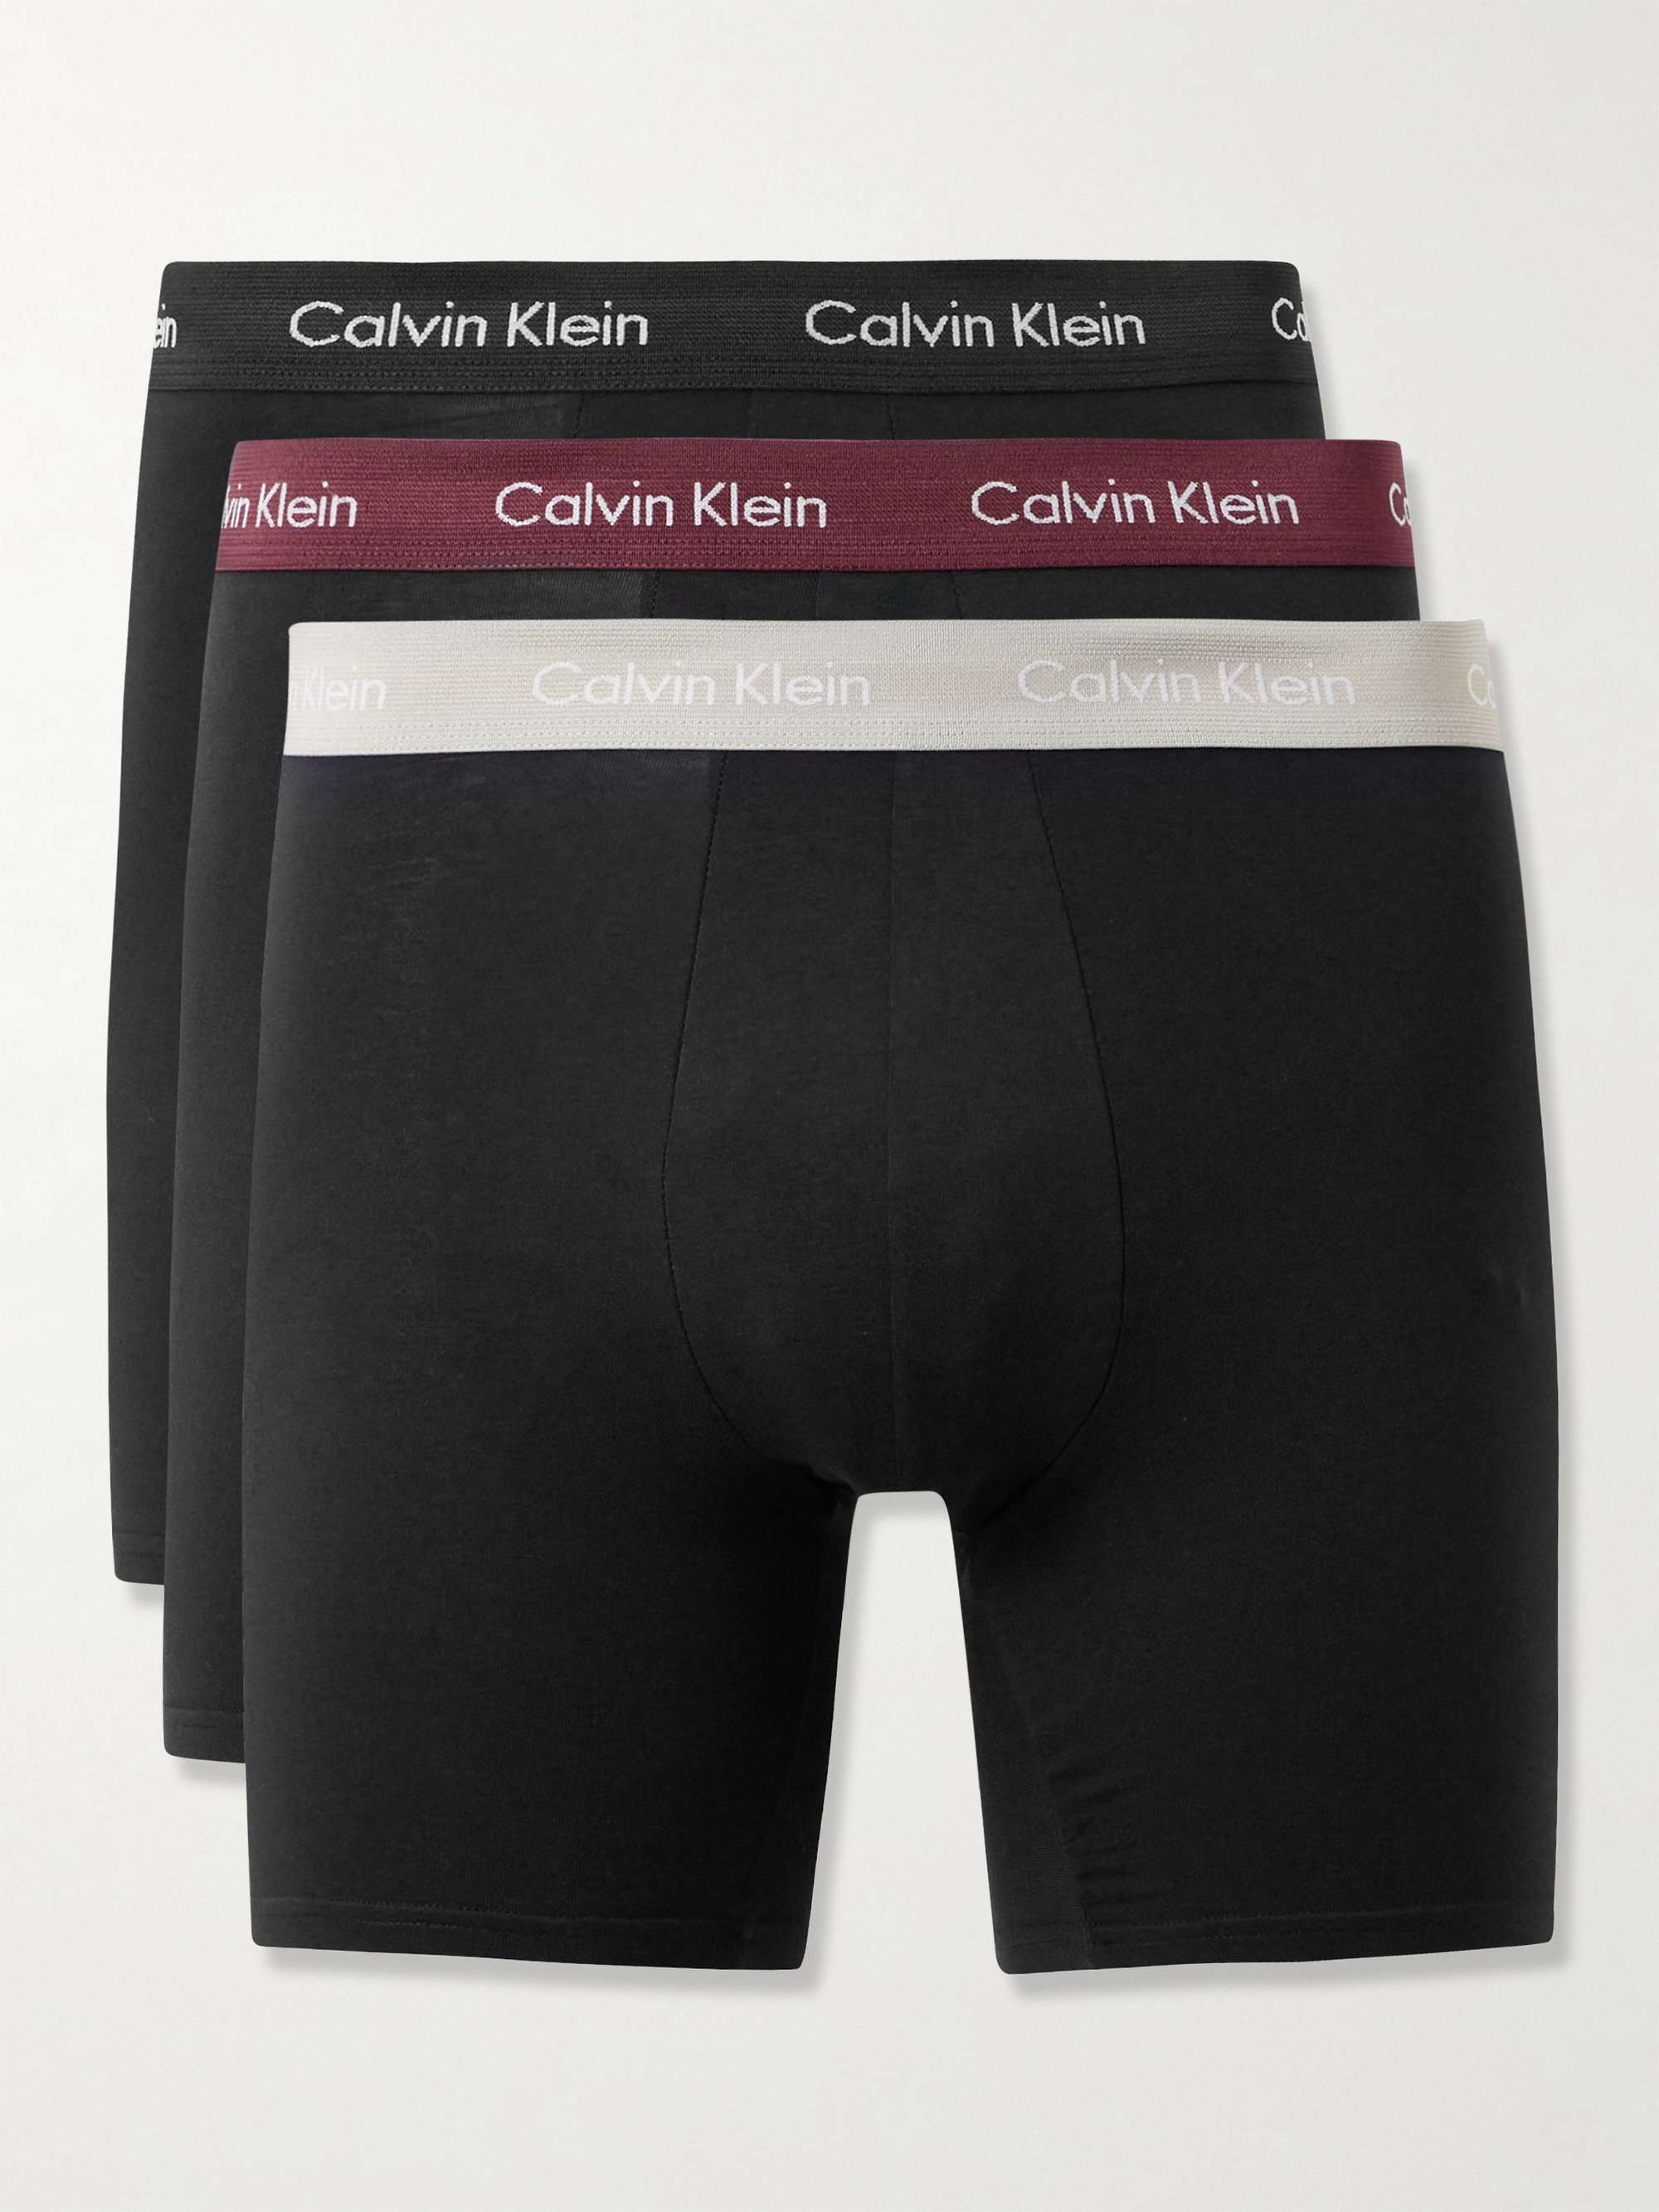 CALVIN KLEIN UNDERWEAR Three-Pack Stretch-Cotton Briefs for Men